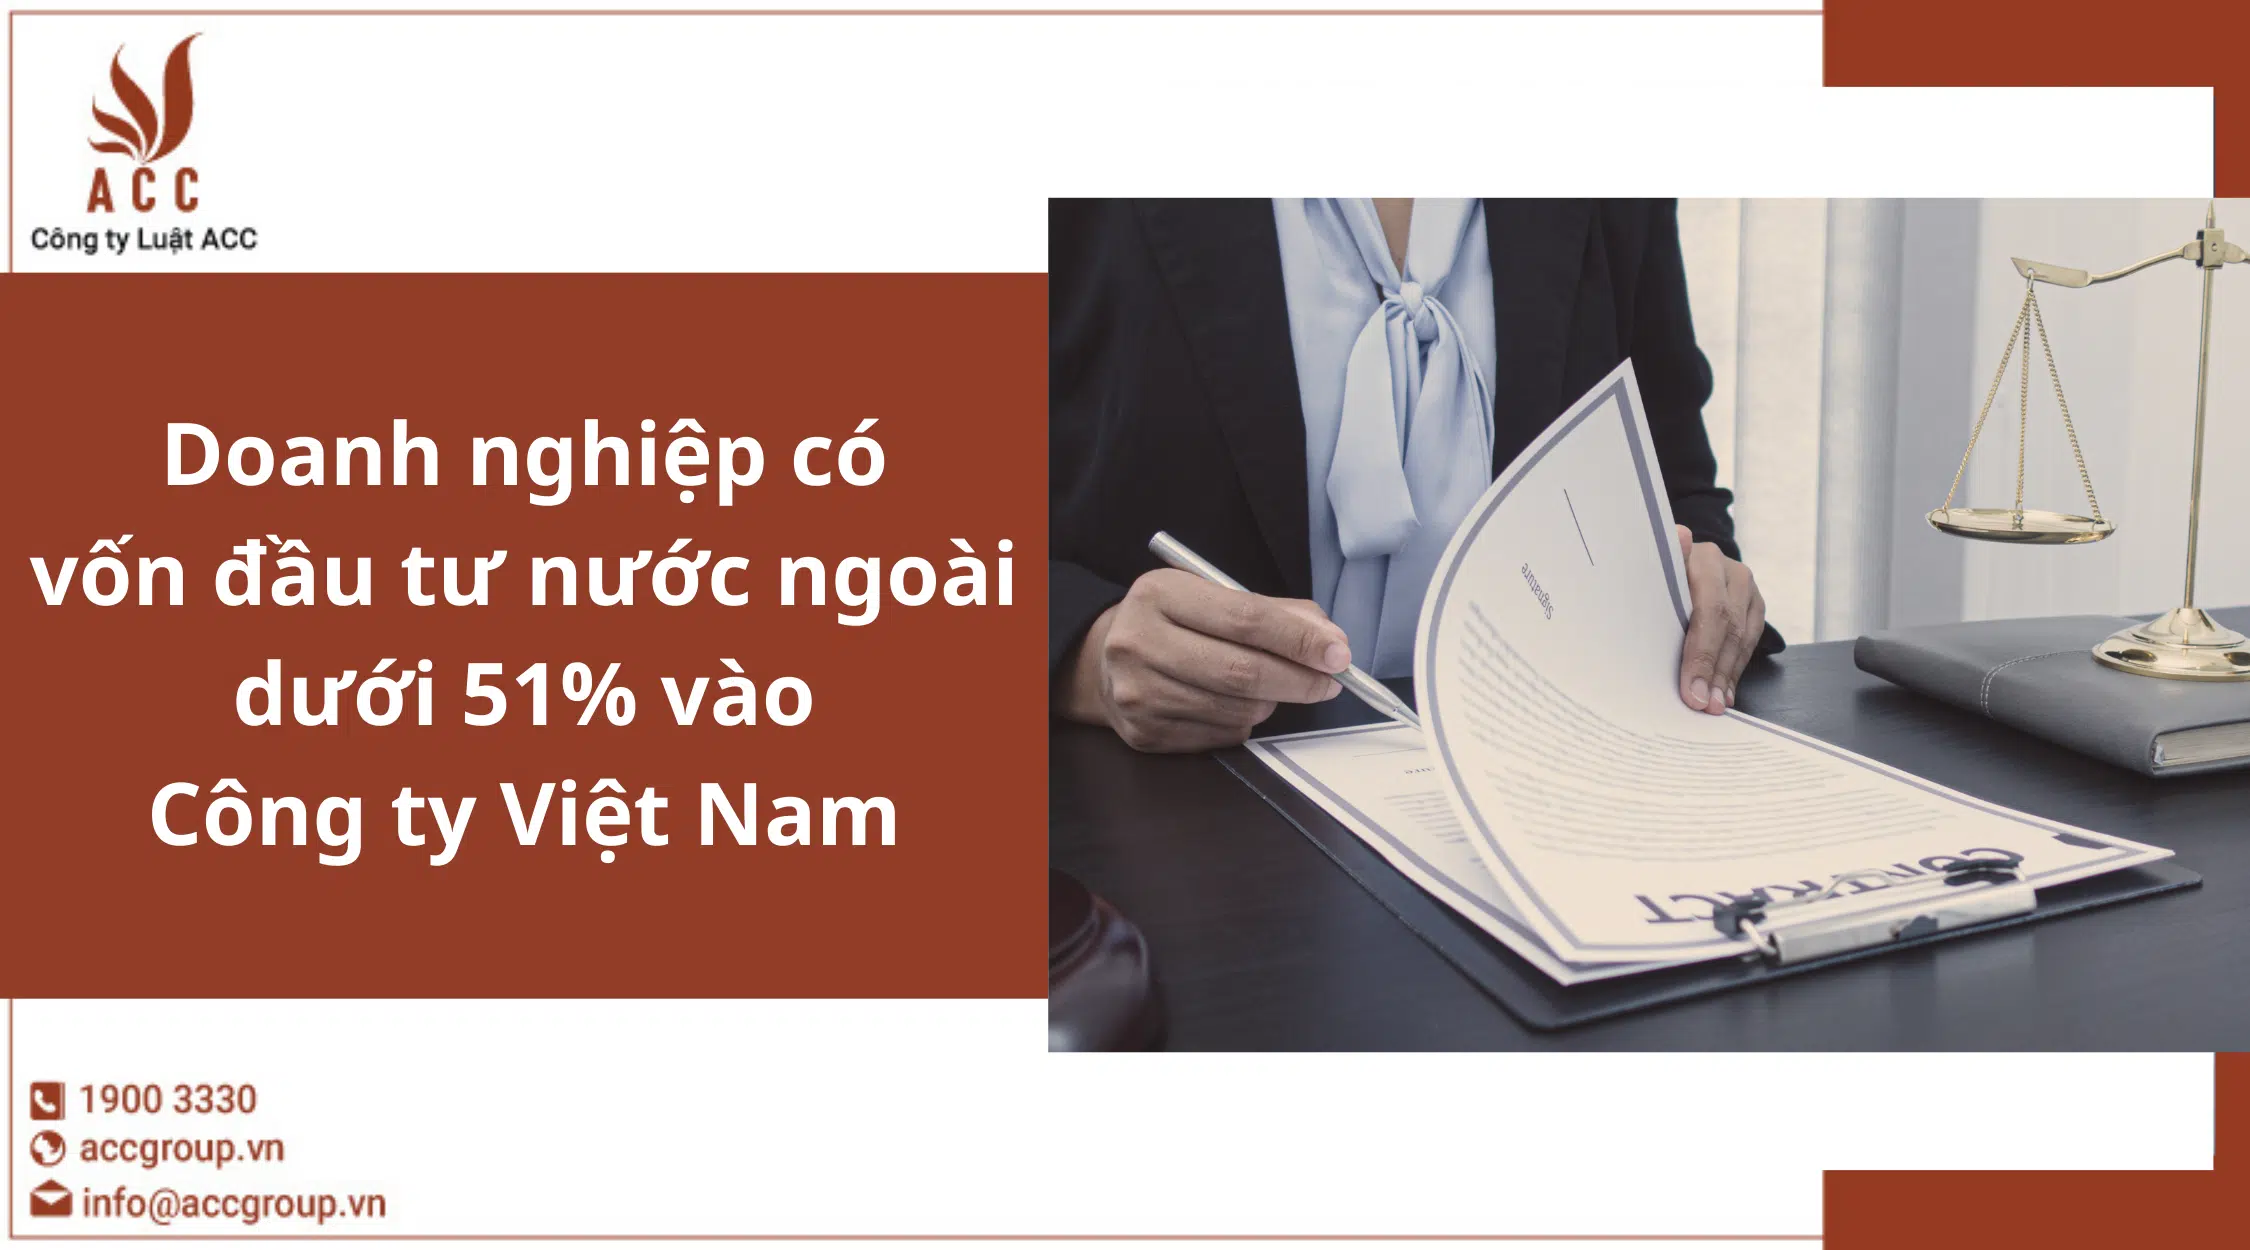 Doanh nghiệp có vốn đầu tư nước ngoài dưới 51% vào Công ty Việt Nam